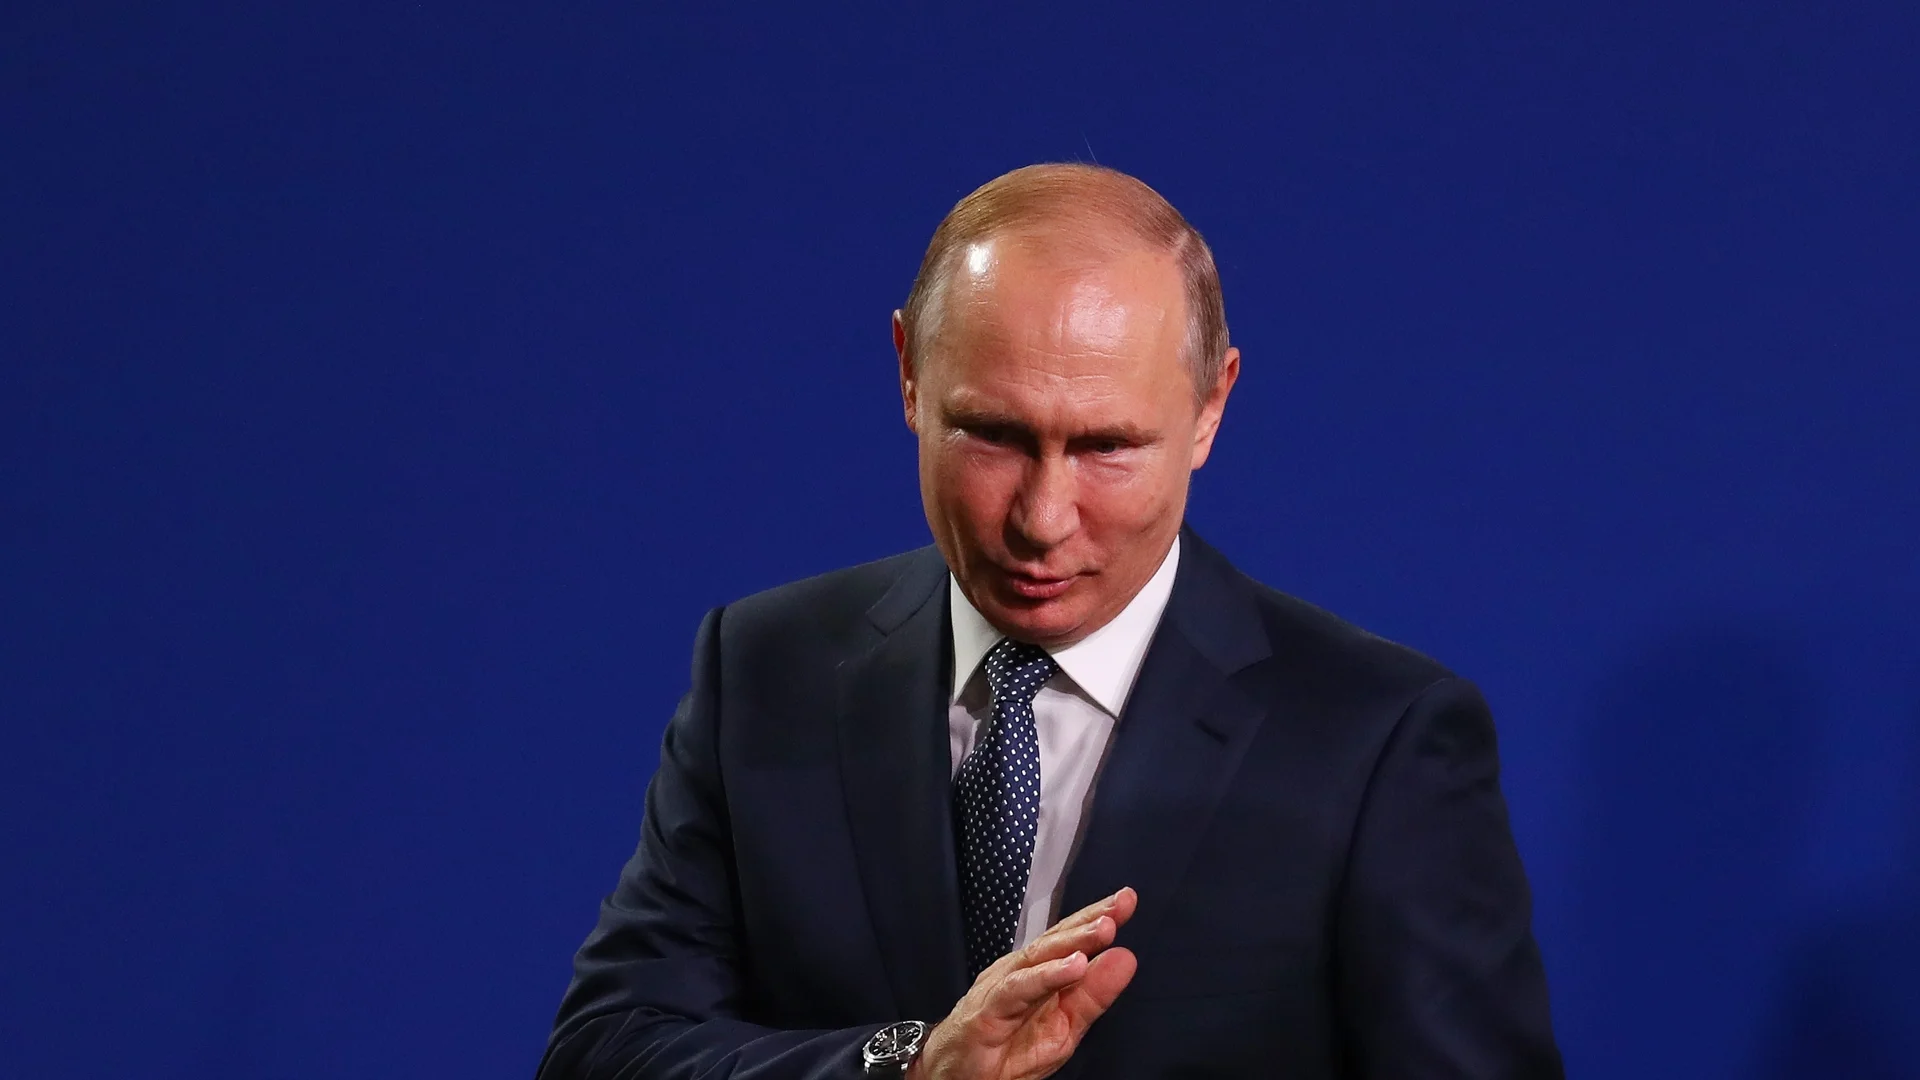 Открита руска опозиция срещу Путин иска примирие в Украйна: Надежда или фарс? (ВИДЕО)